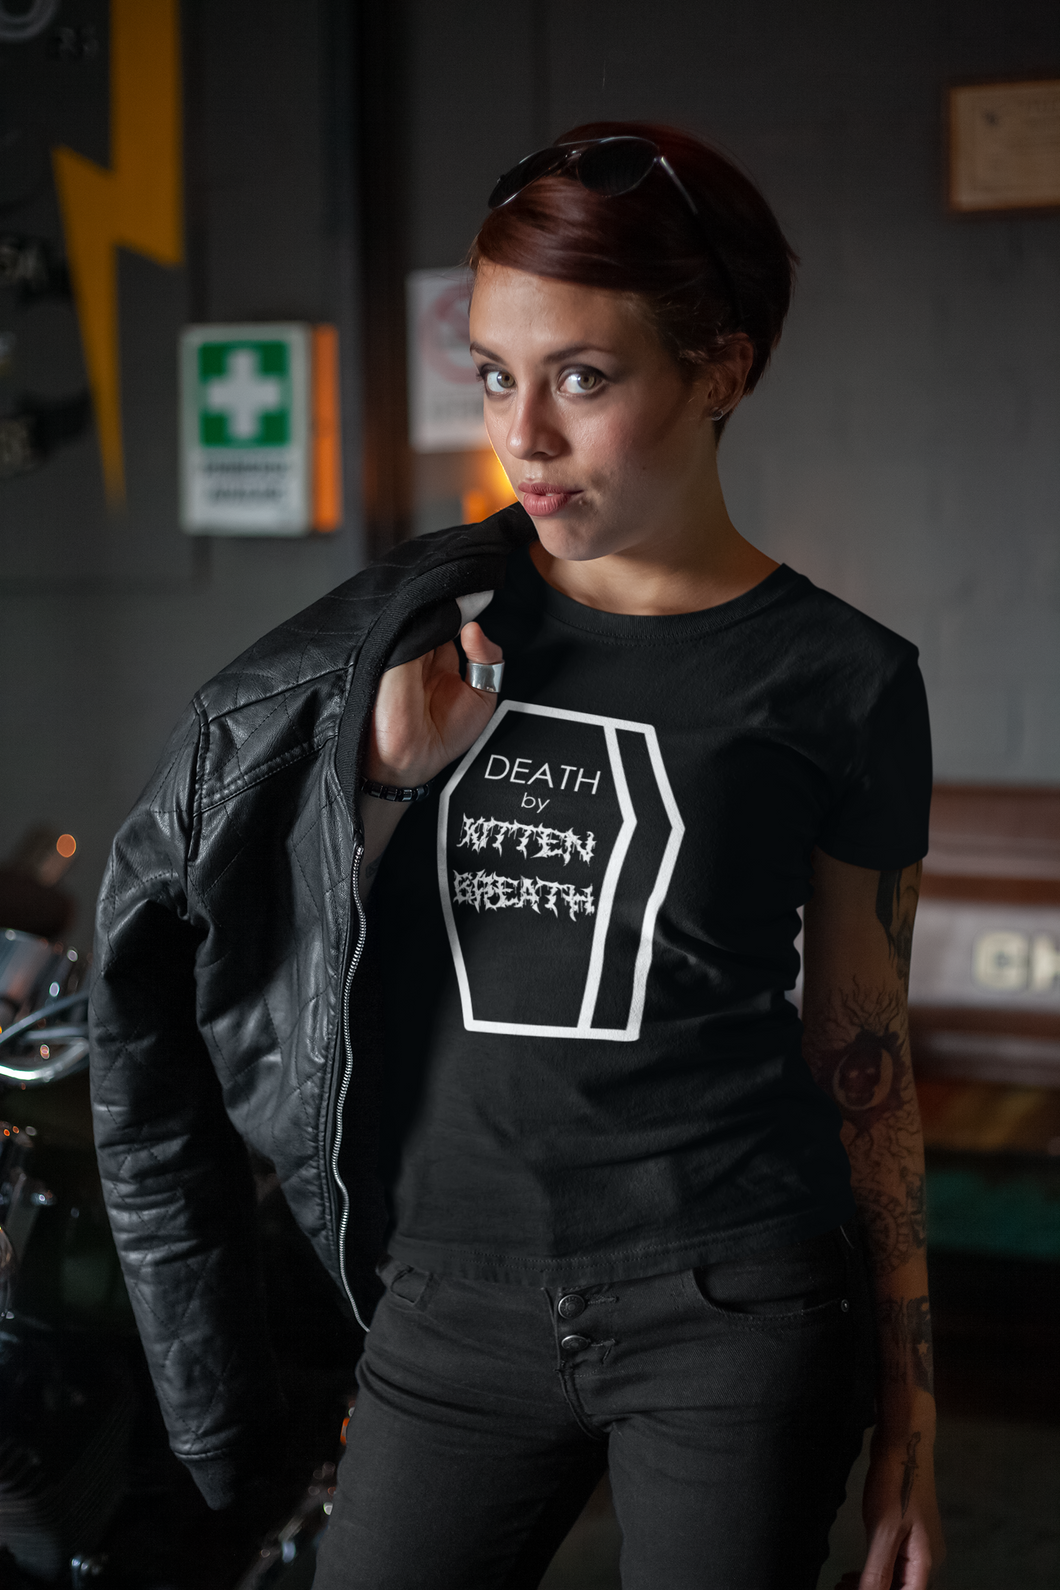 Death by Kitten Breath Men's/Unisex or Women's T-shirt